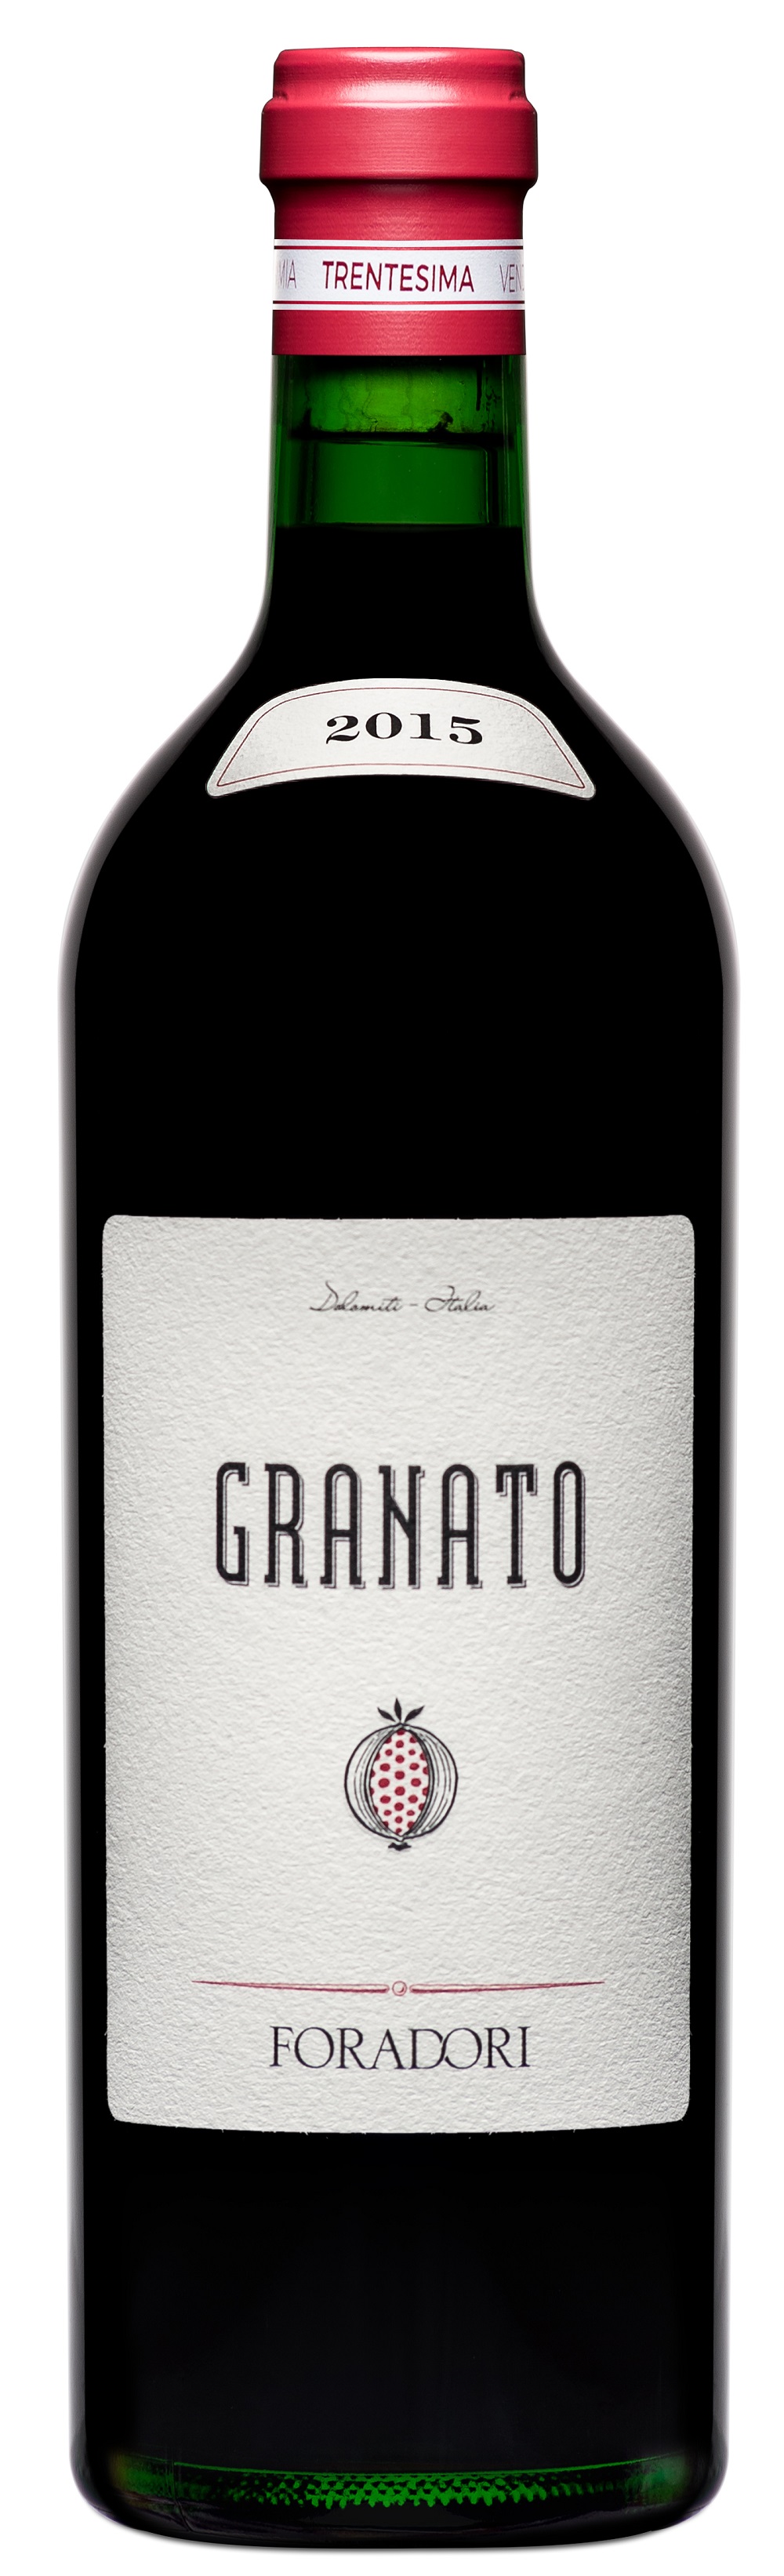 Granato 2015